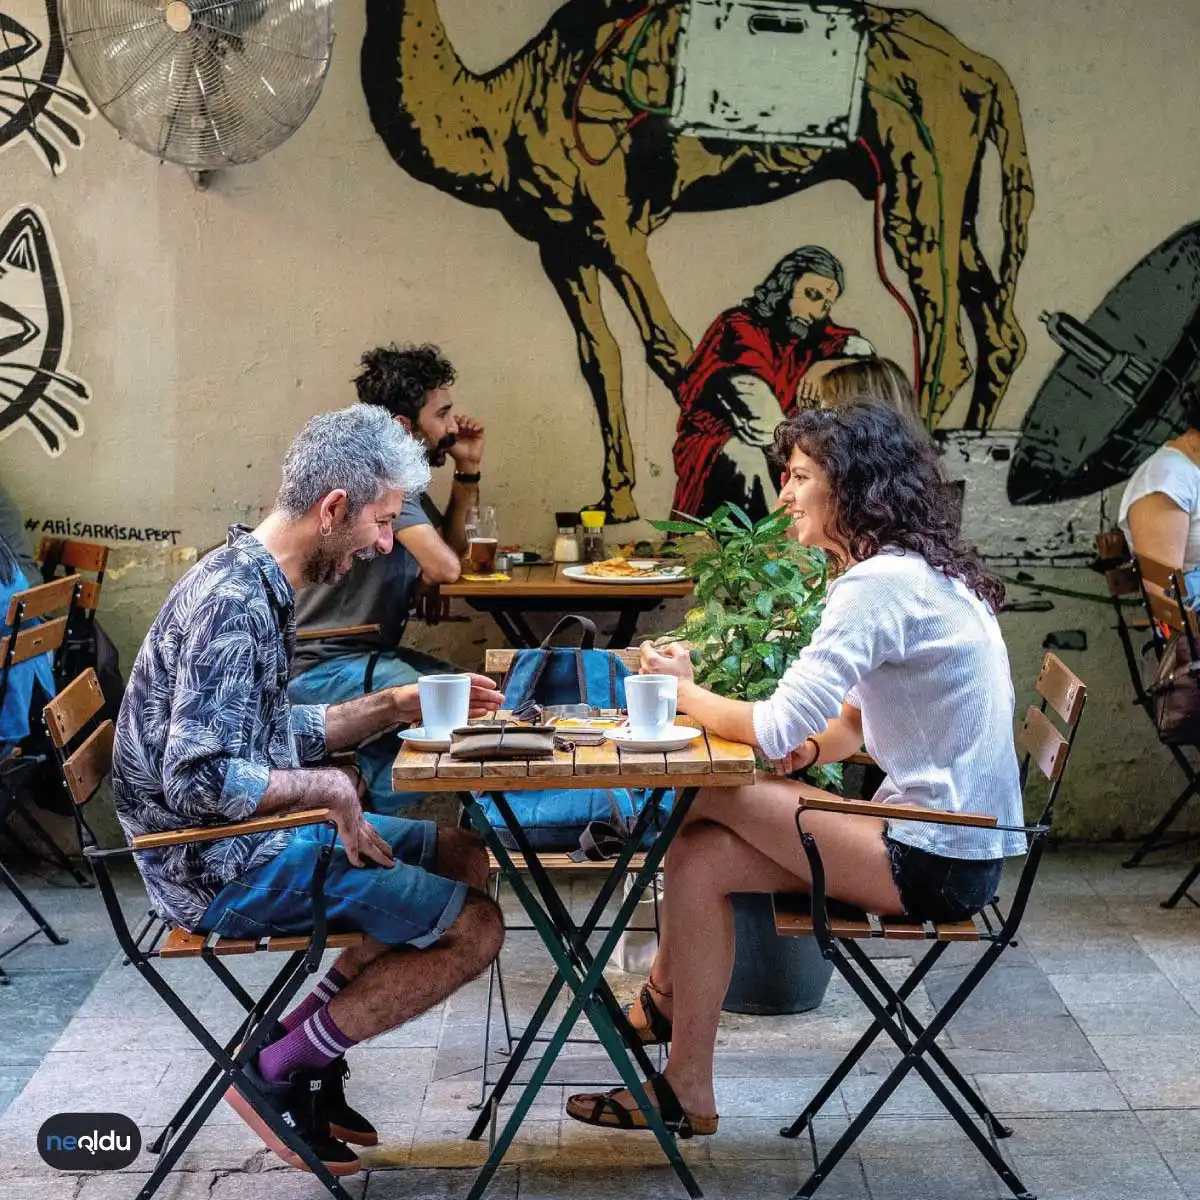 İstanbul'da Hipsterların Tercih Ettiği Mekanlar